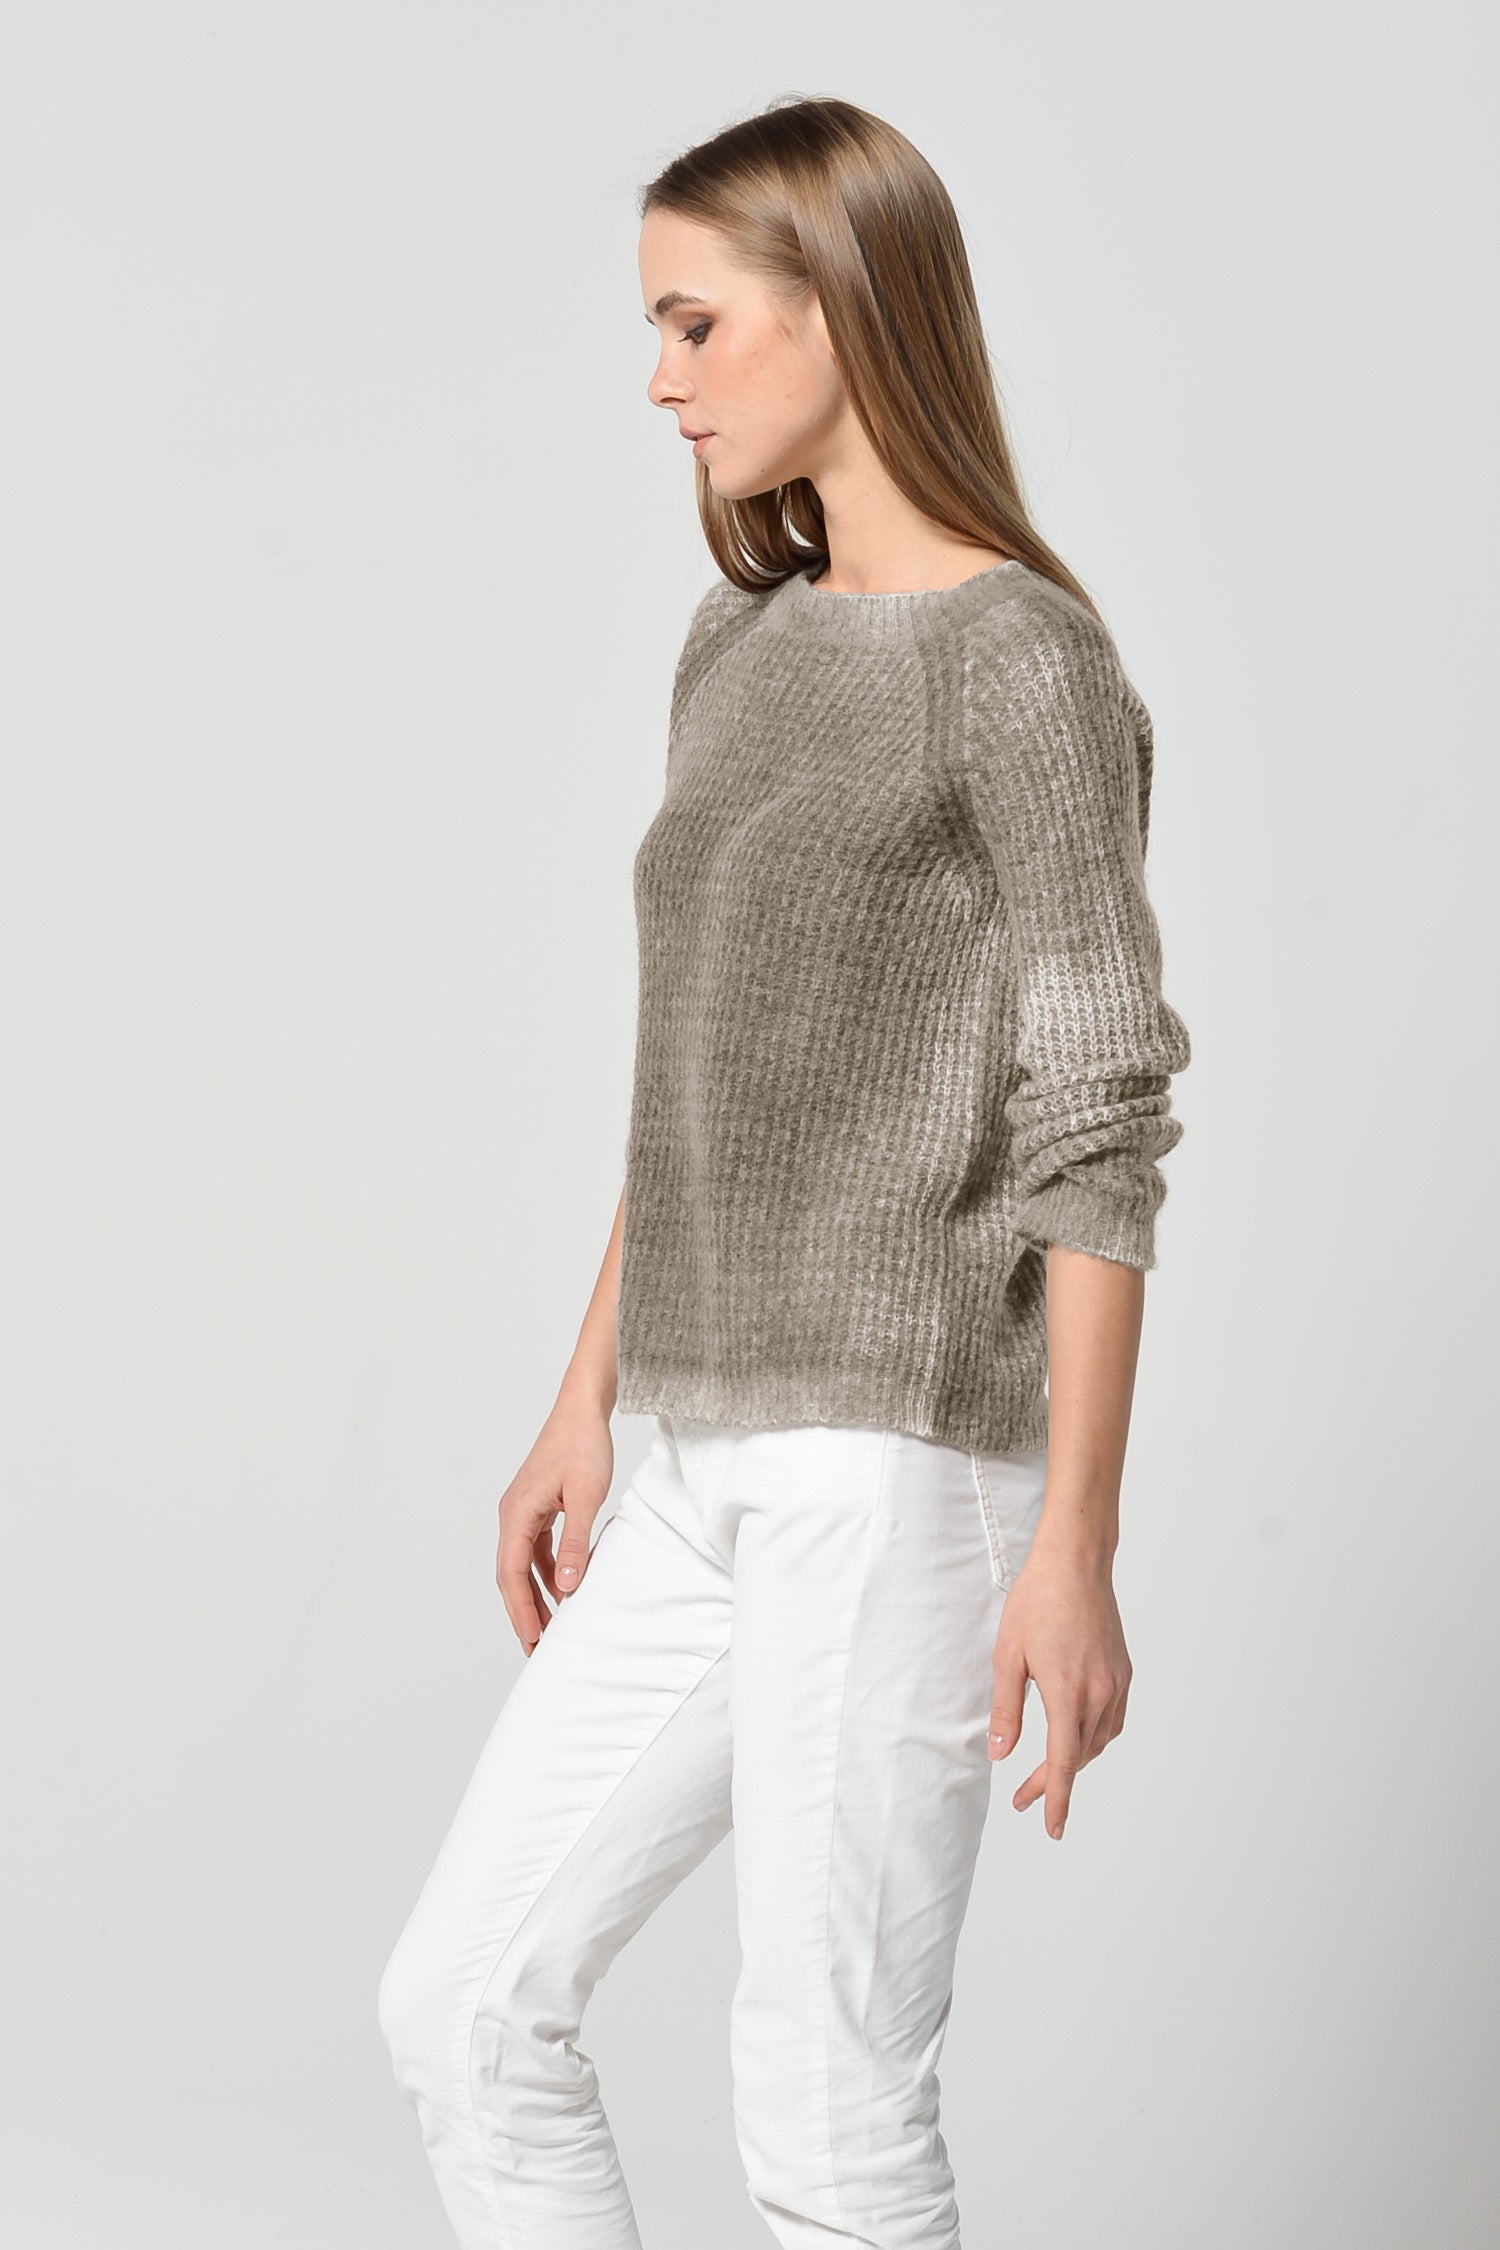 Clune Frost Art Sweater - Breakers